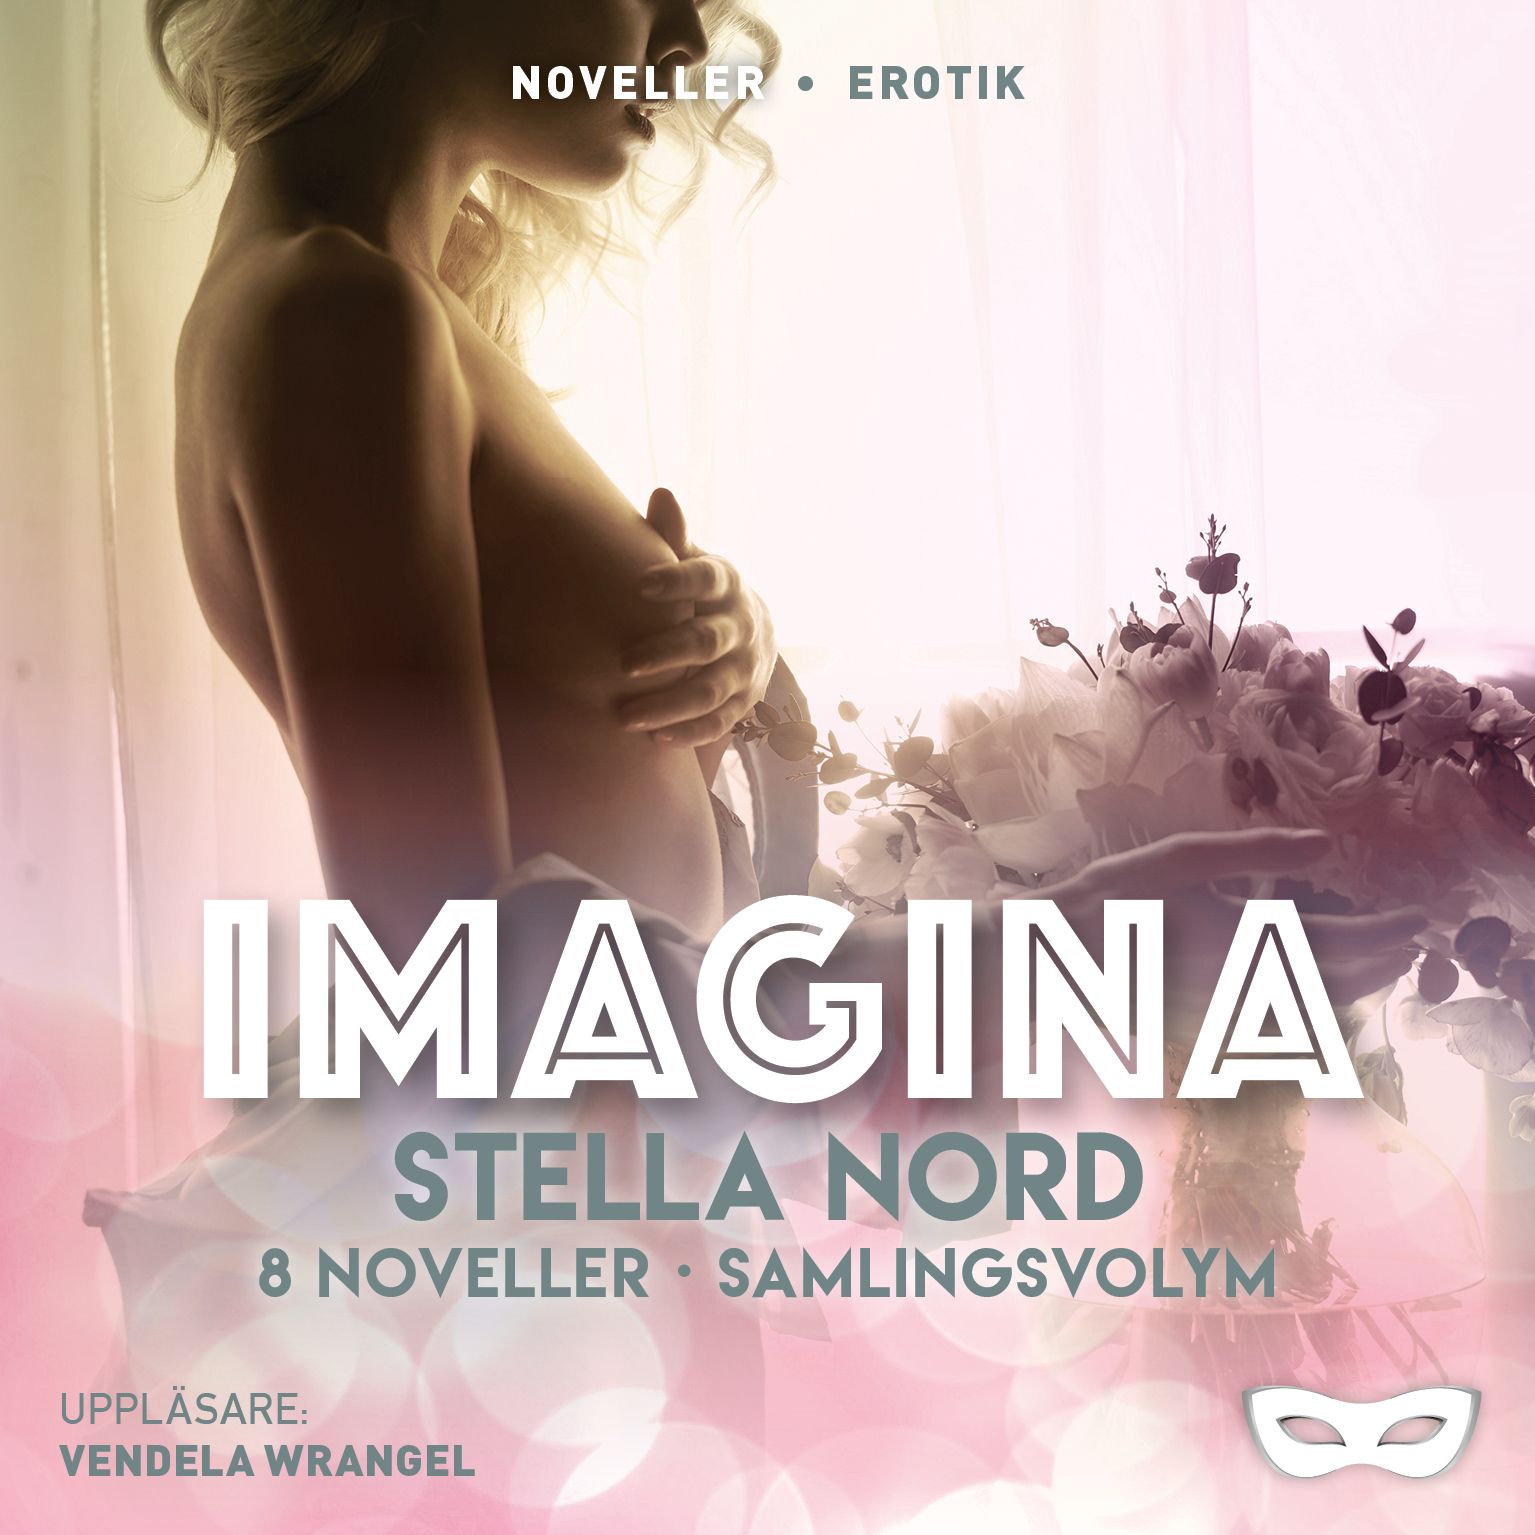 Stella Nord: Imagina 8 noveller Samlingsvolym, ljudbok av Stella Nord